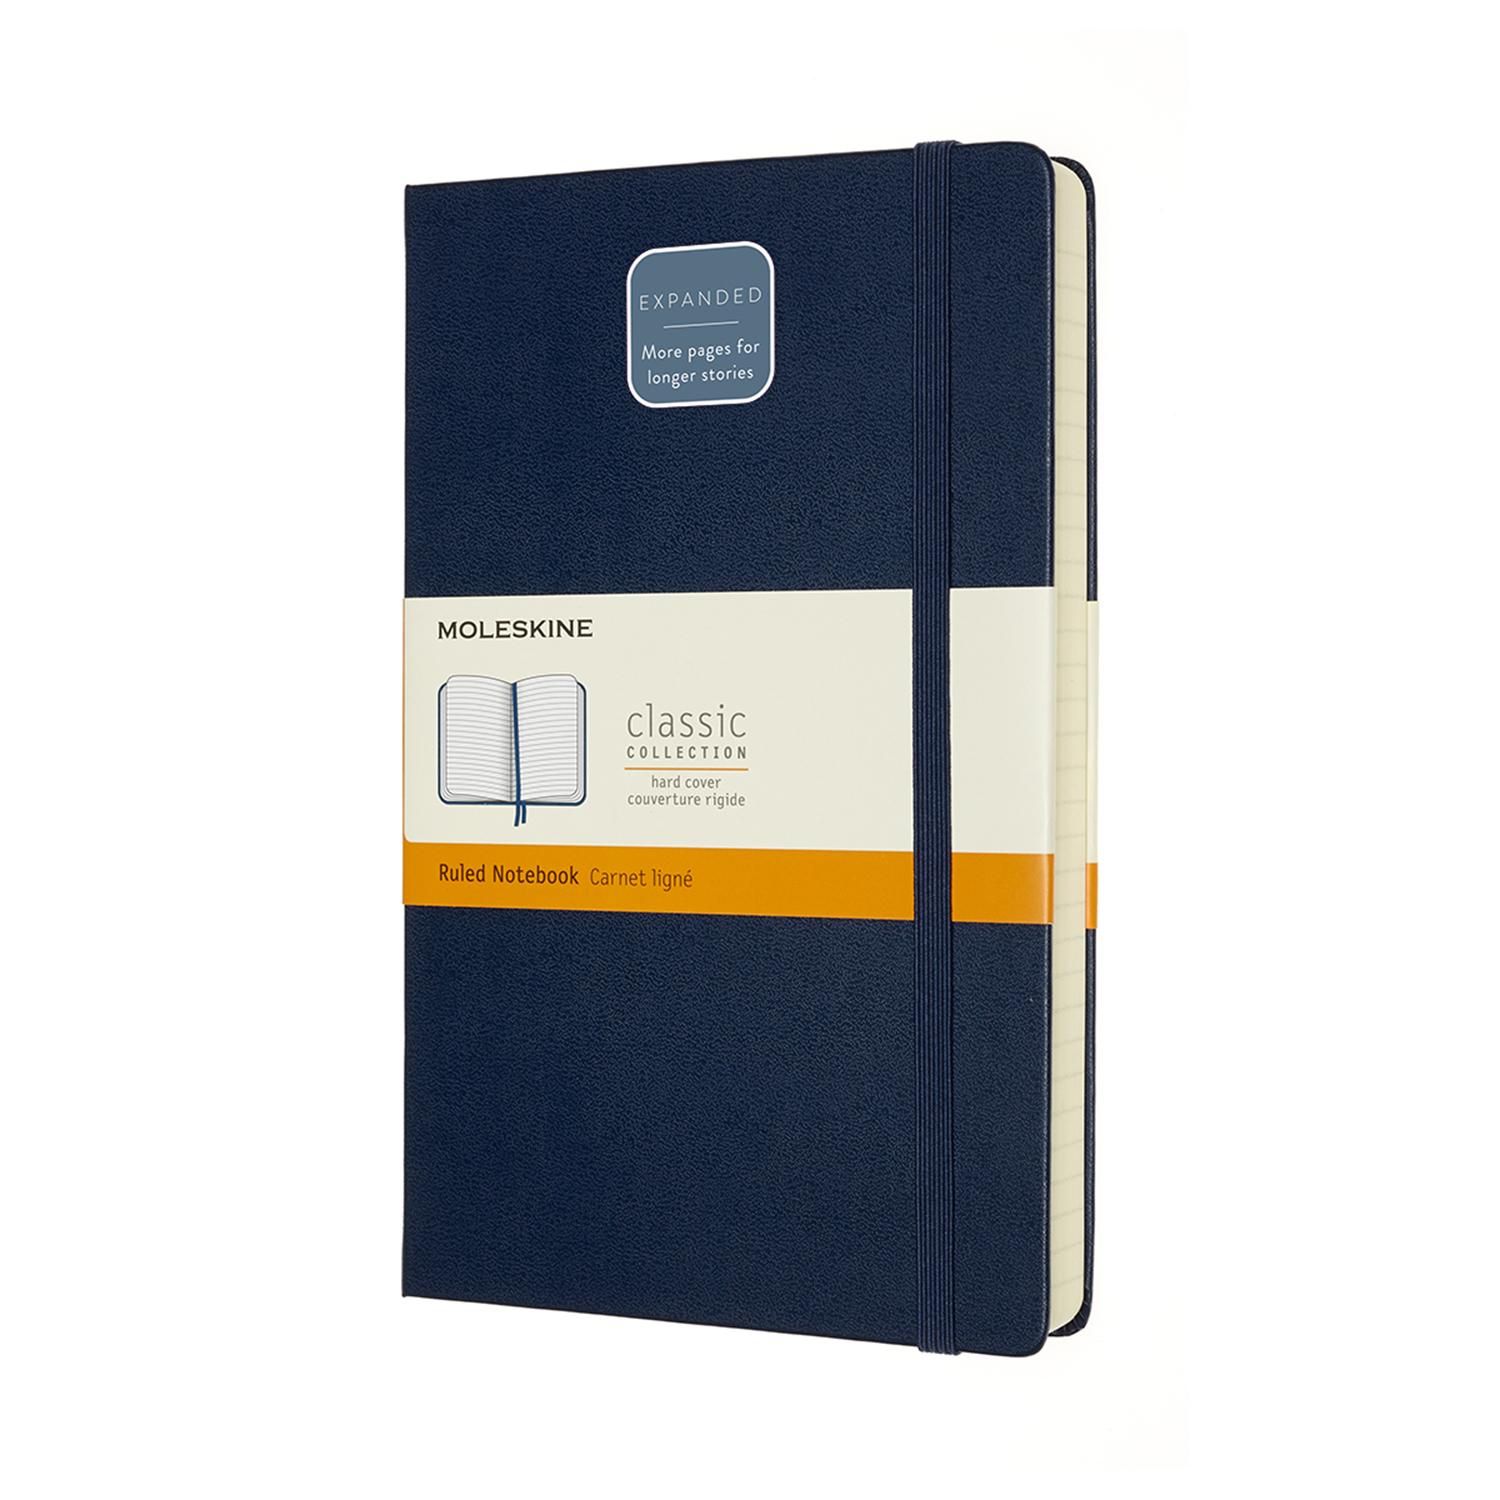 Moleskine Notebook Expanded Large Ruled, SapphirebBLUE